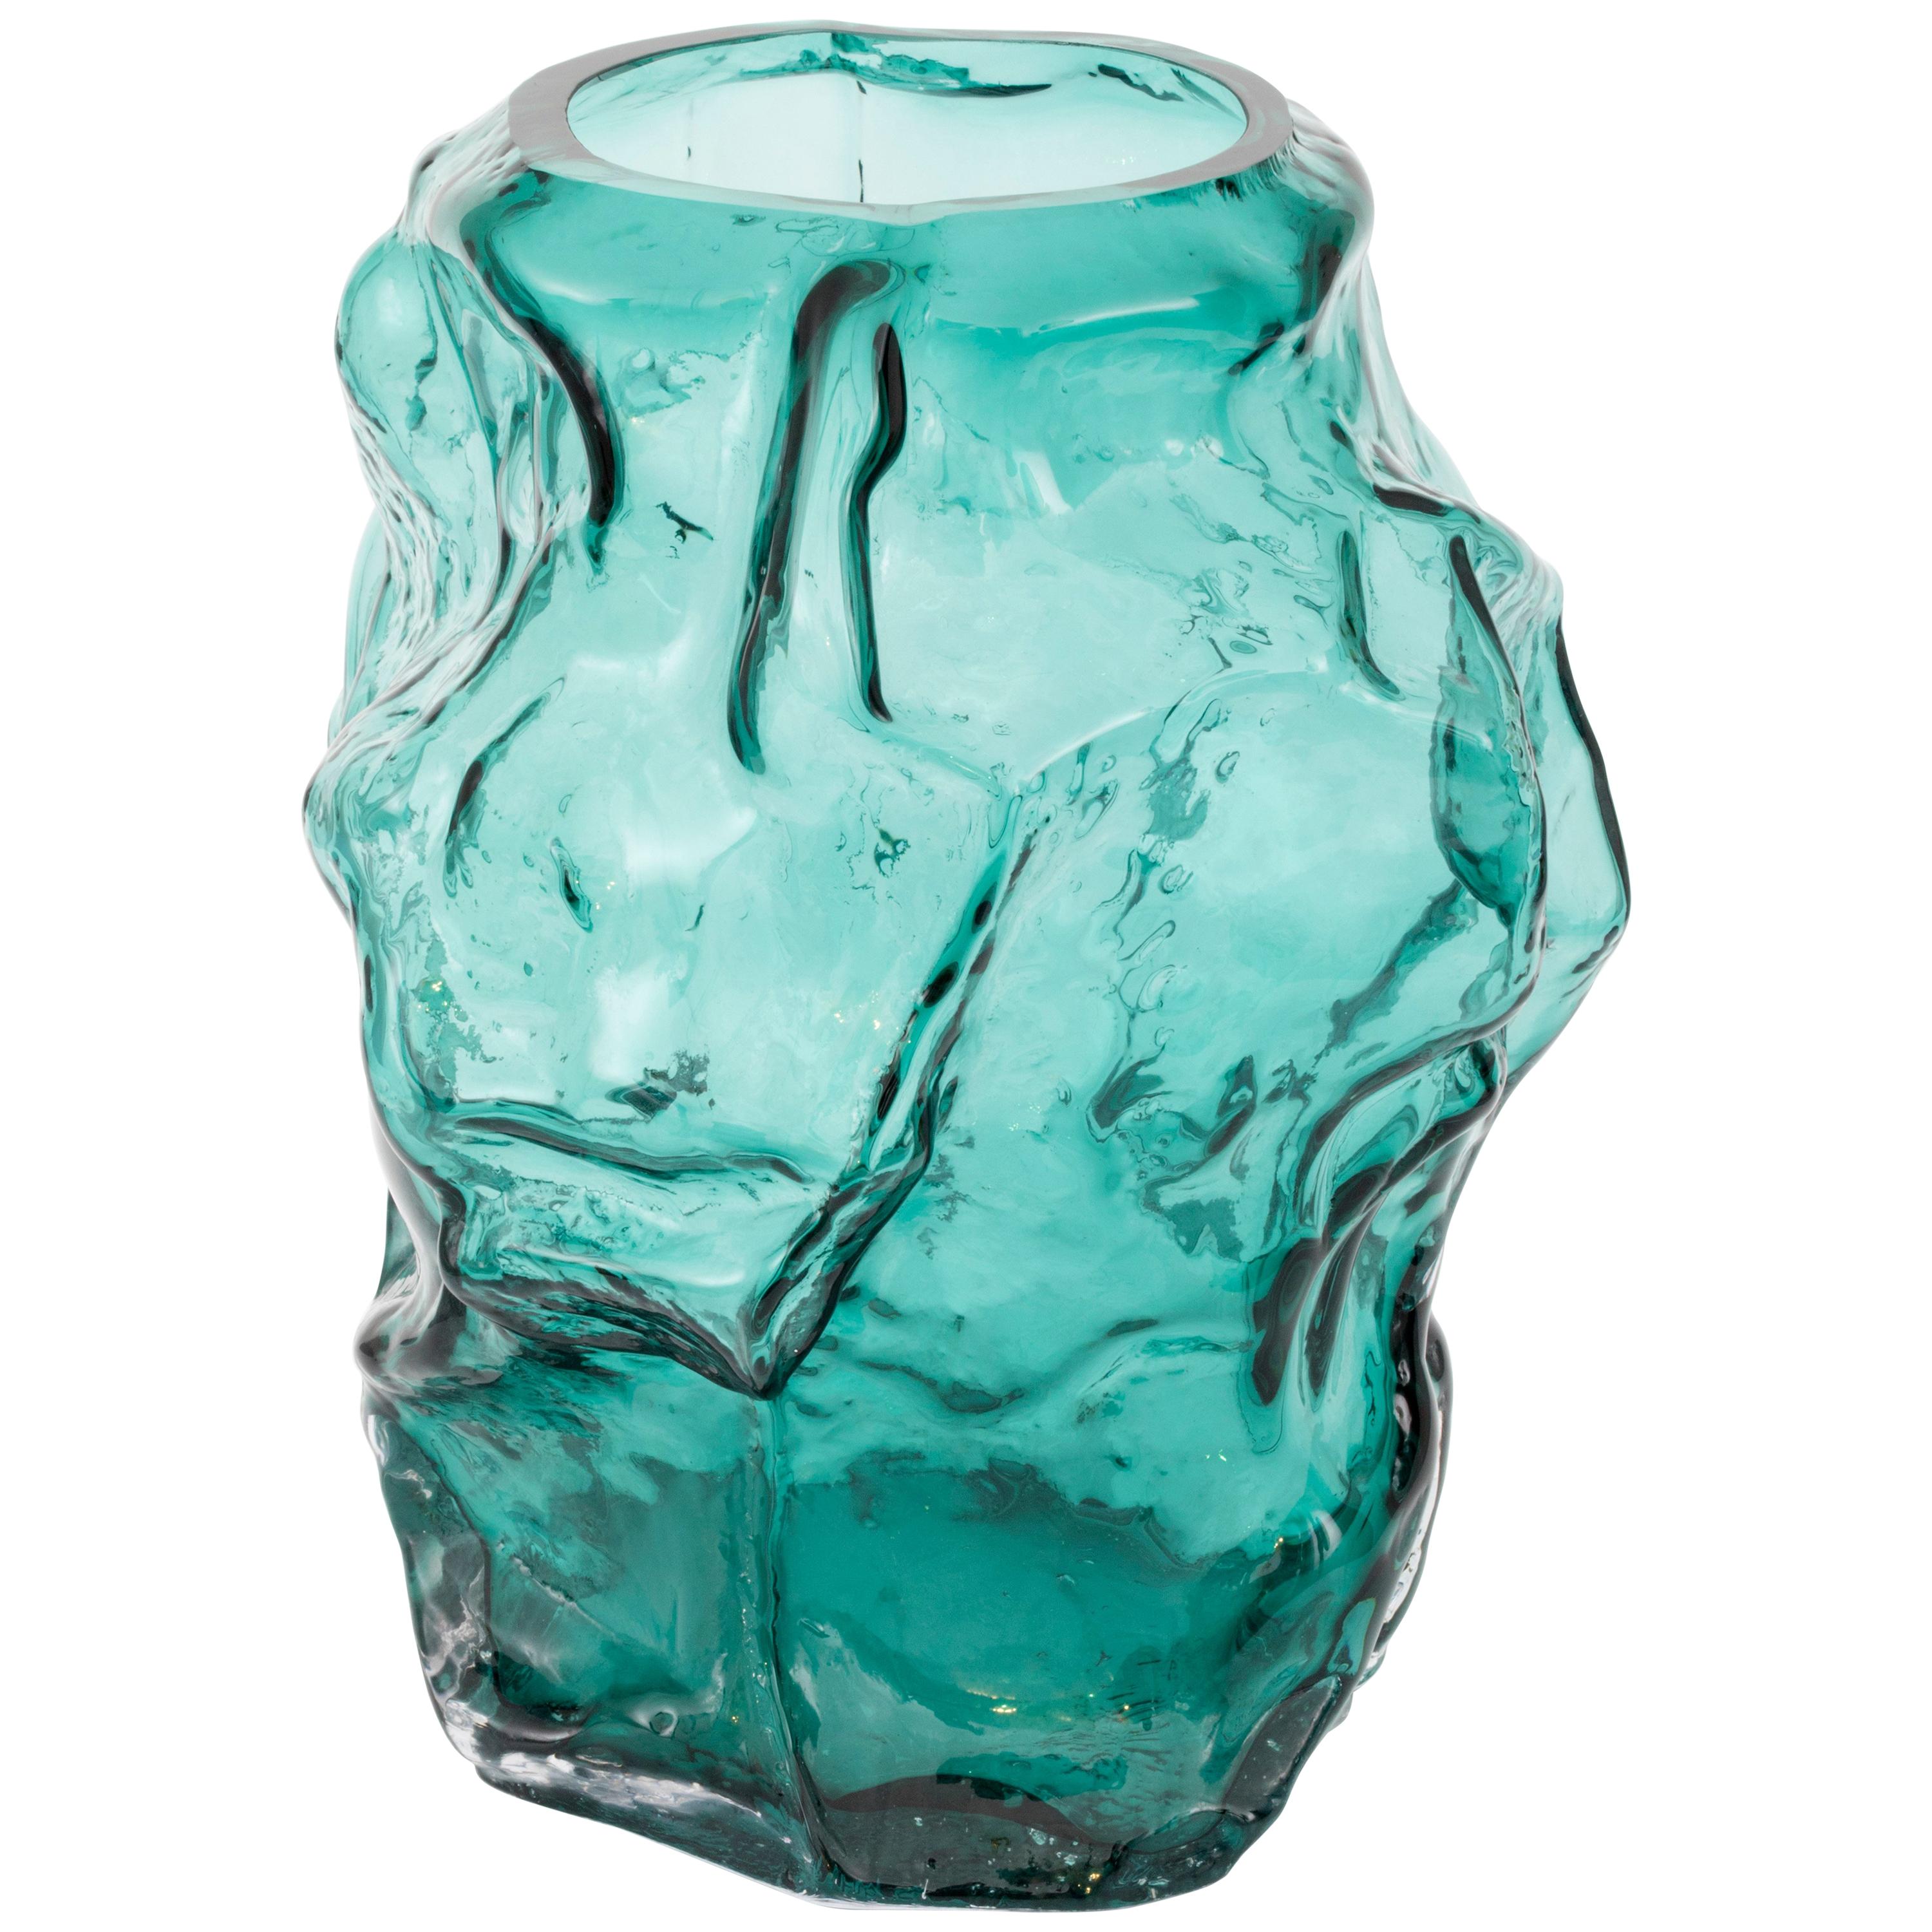 Contemporary Design Unique Glass 'Mountain' Vase by FOS- Ocean